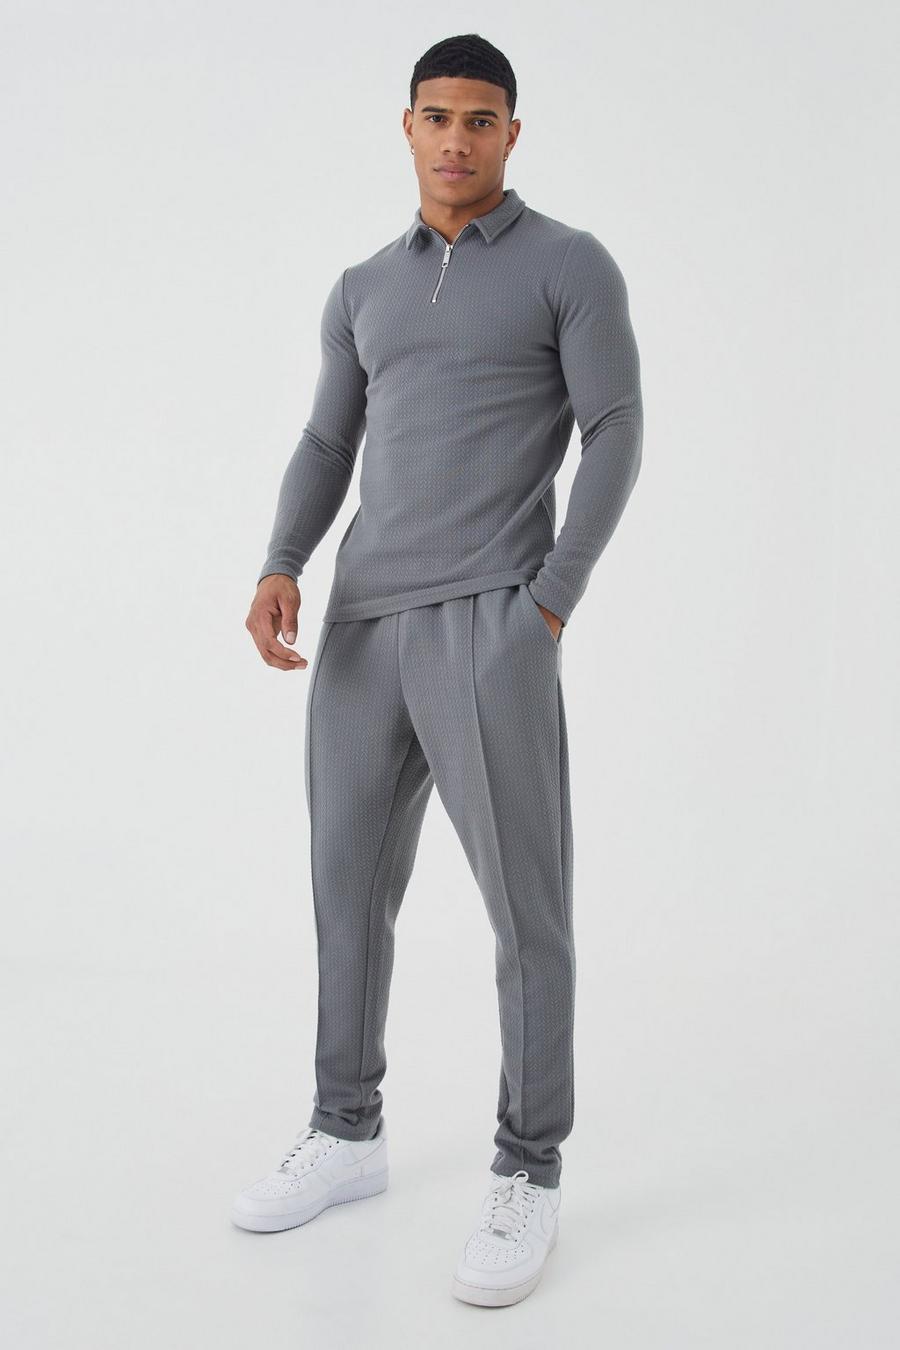 Conjunto de pantalón deportivo y polo de jacquard de manga larga ajustado al músculo, Charcoal